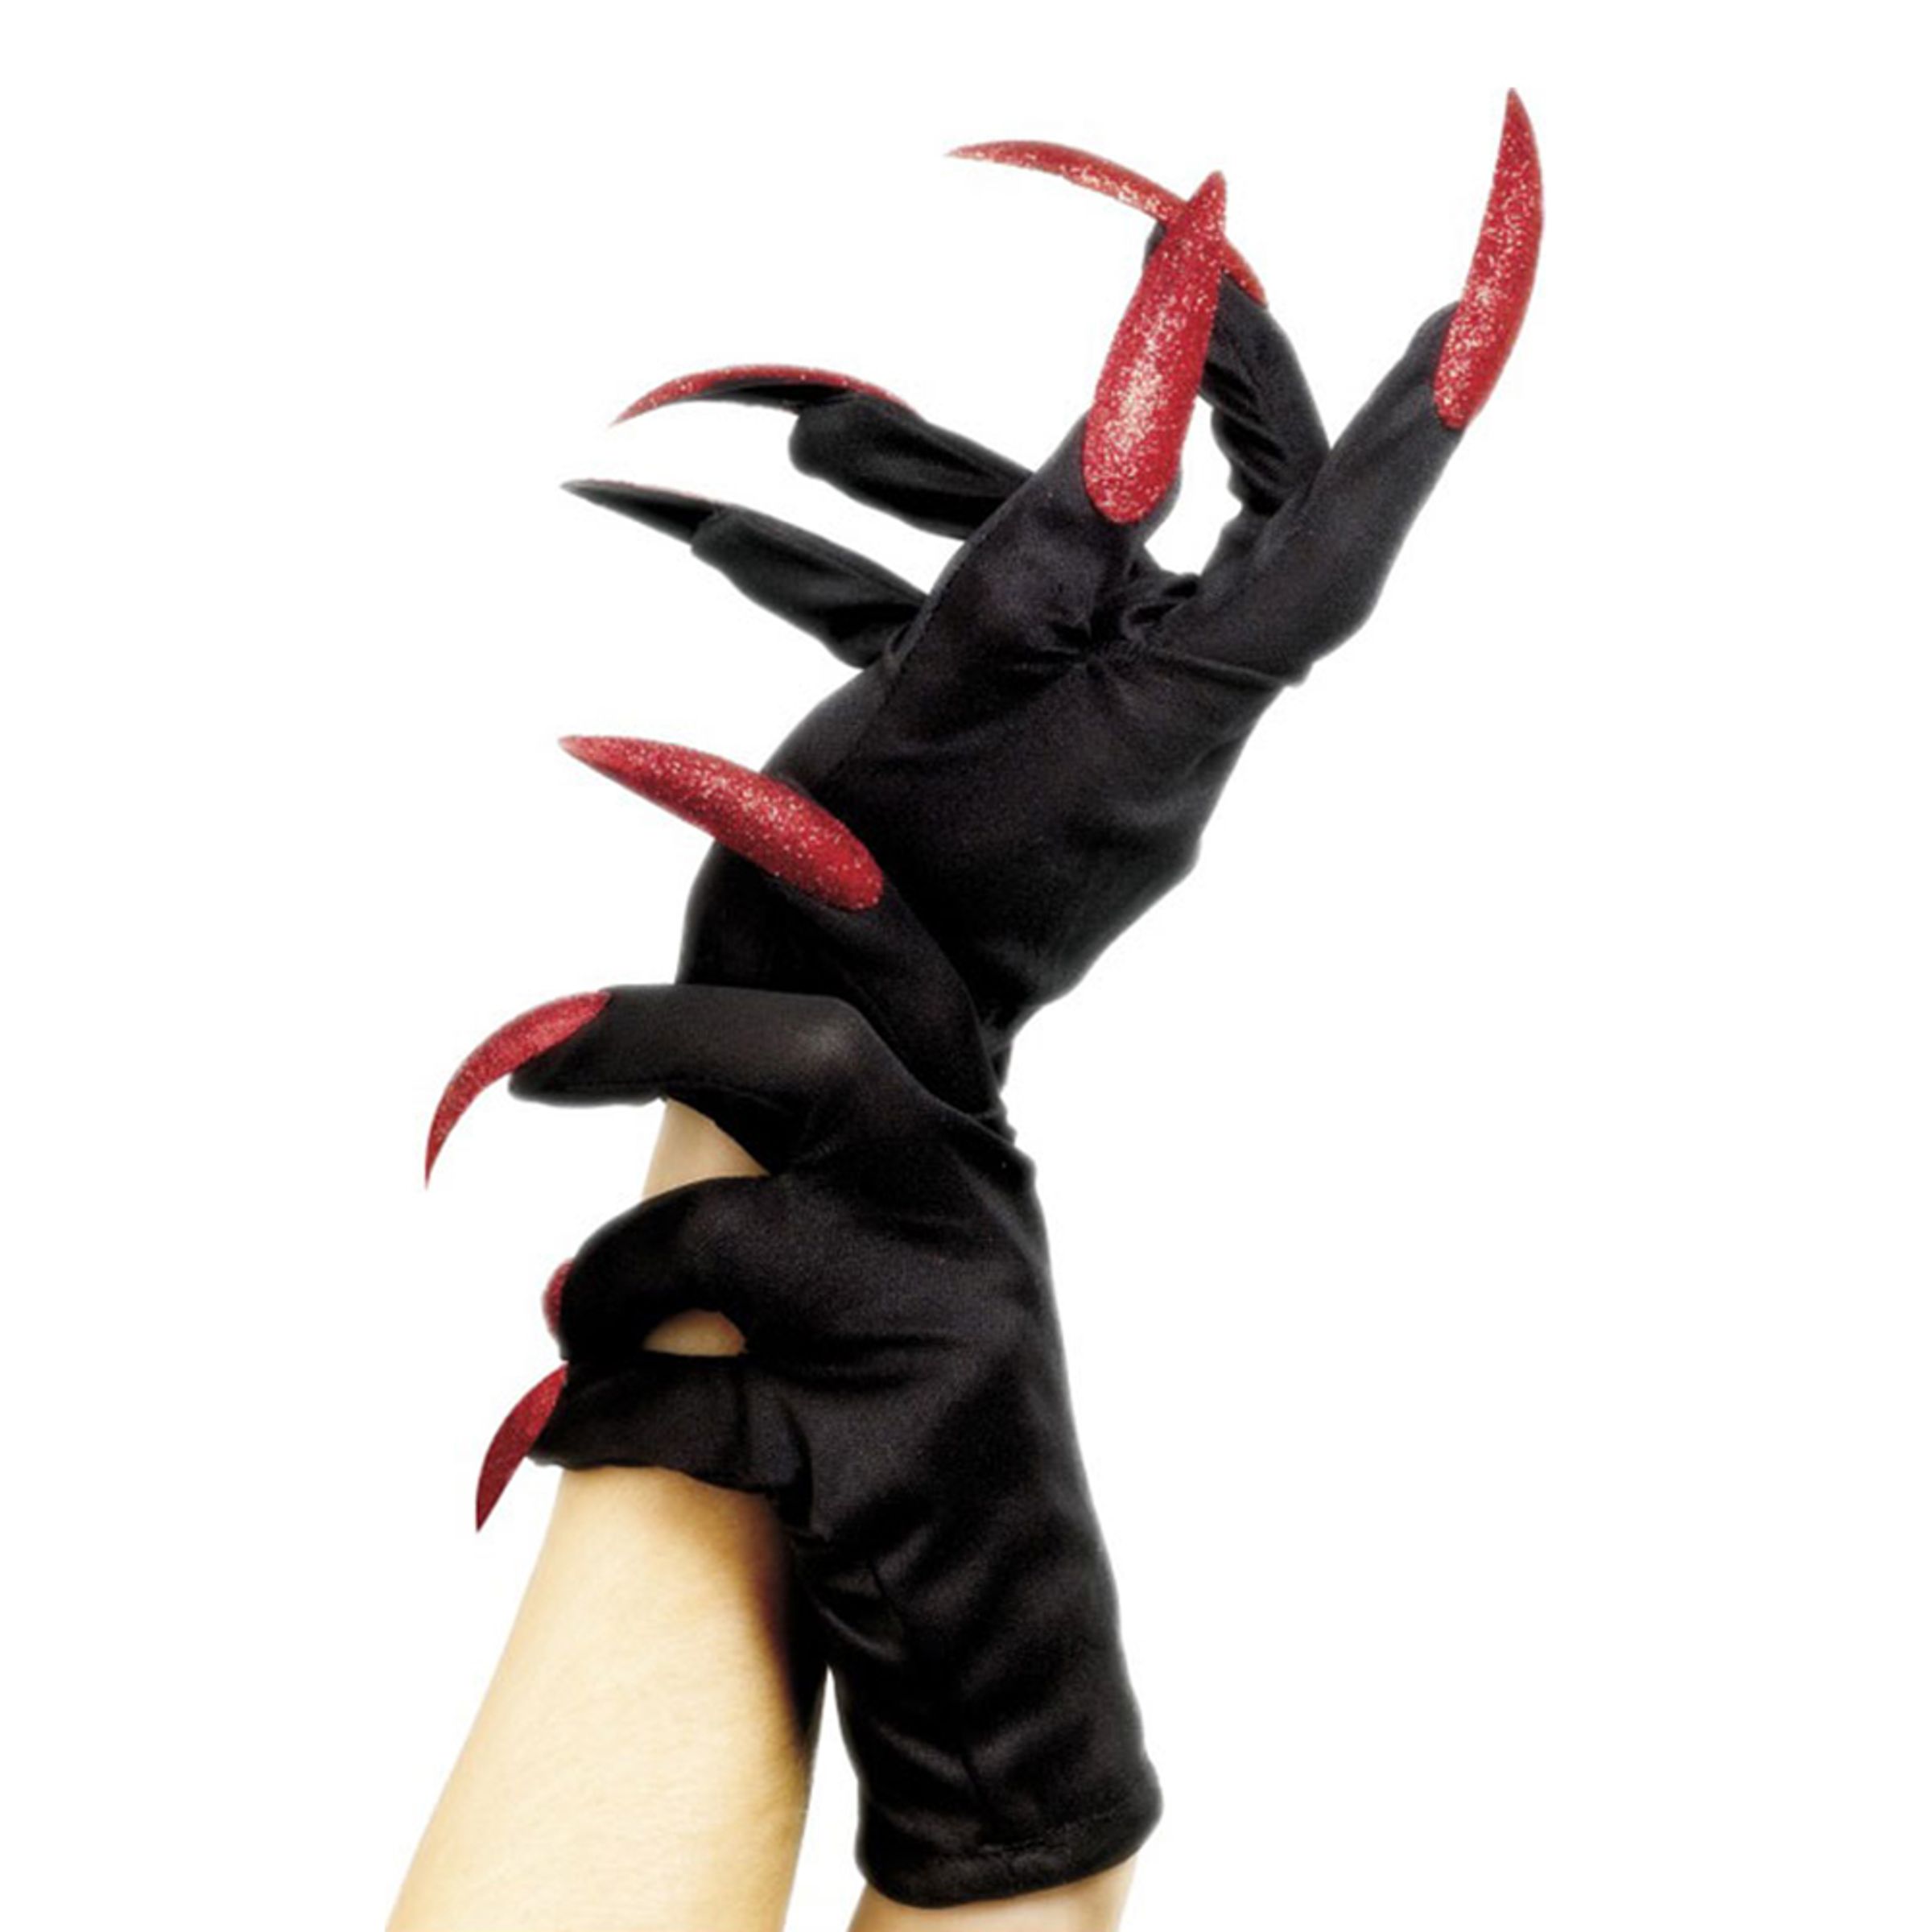 Svarta Handskar med Naglar - One size